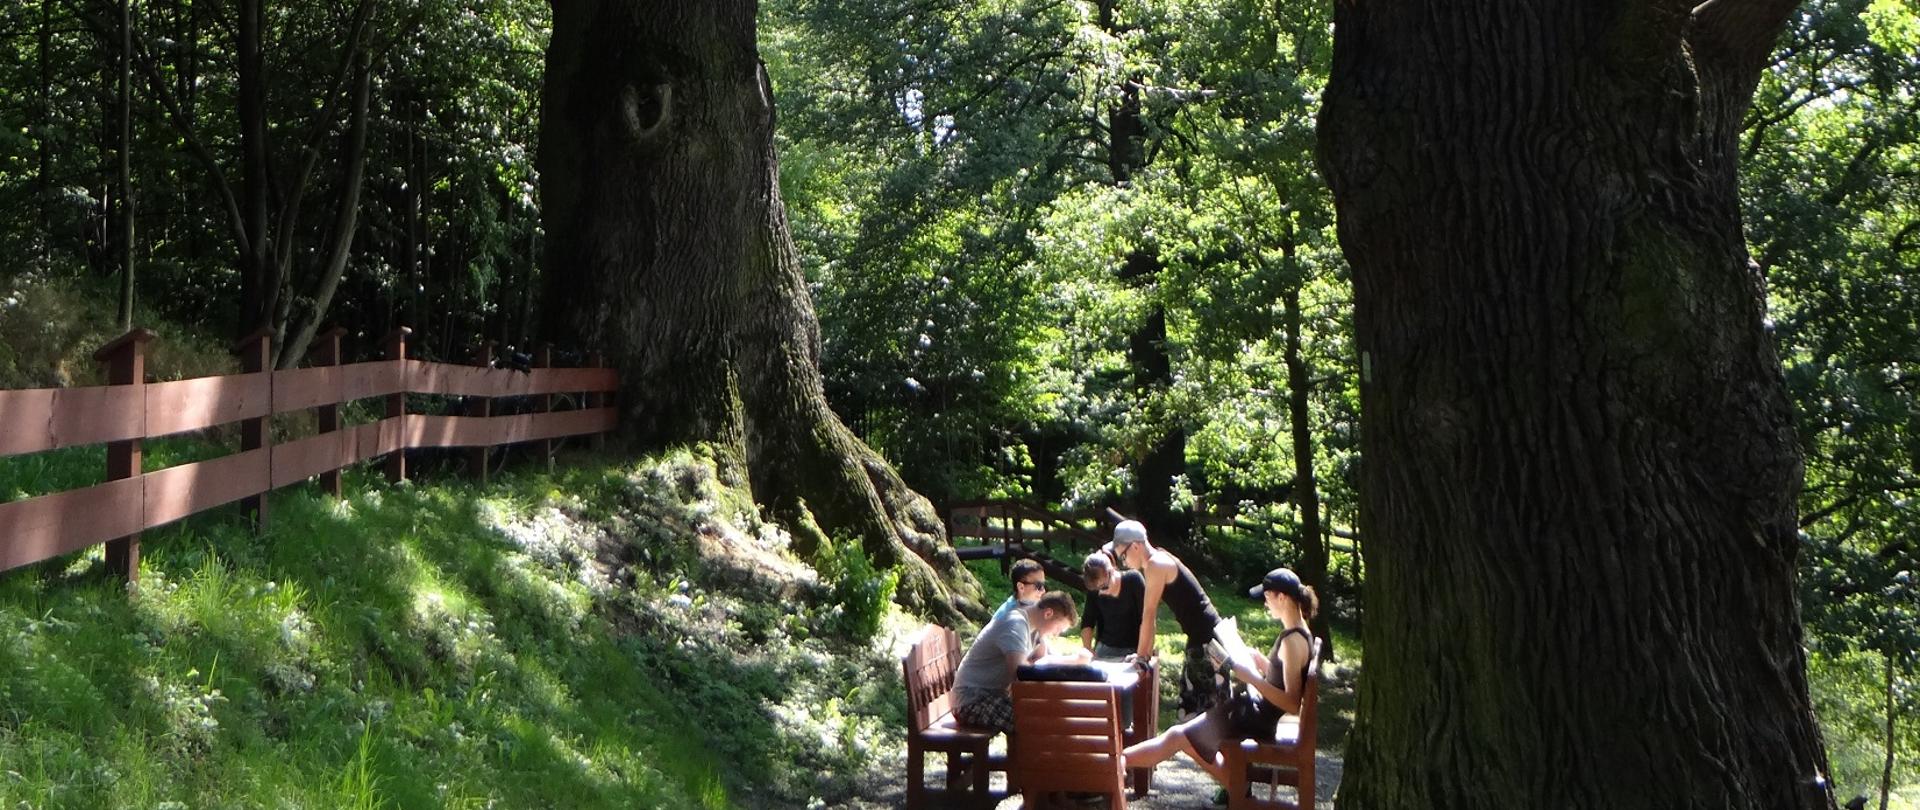 Pomnikowe dęby (od lewej): "Mieszko" i "Przemko" . Pomiędzy nimi znajduje się miejsce odpoczynkowe (drewniany stół, ławy i krzesło)